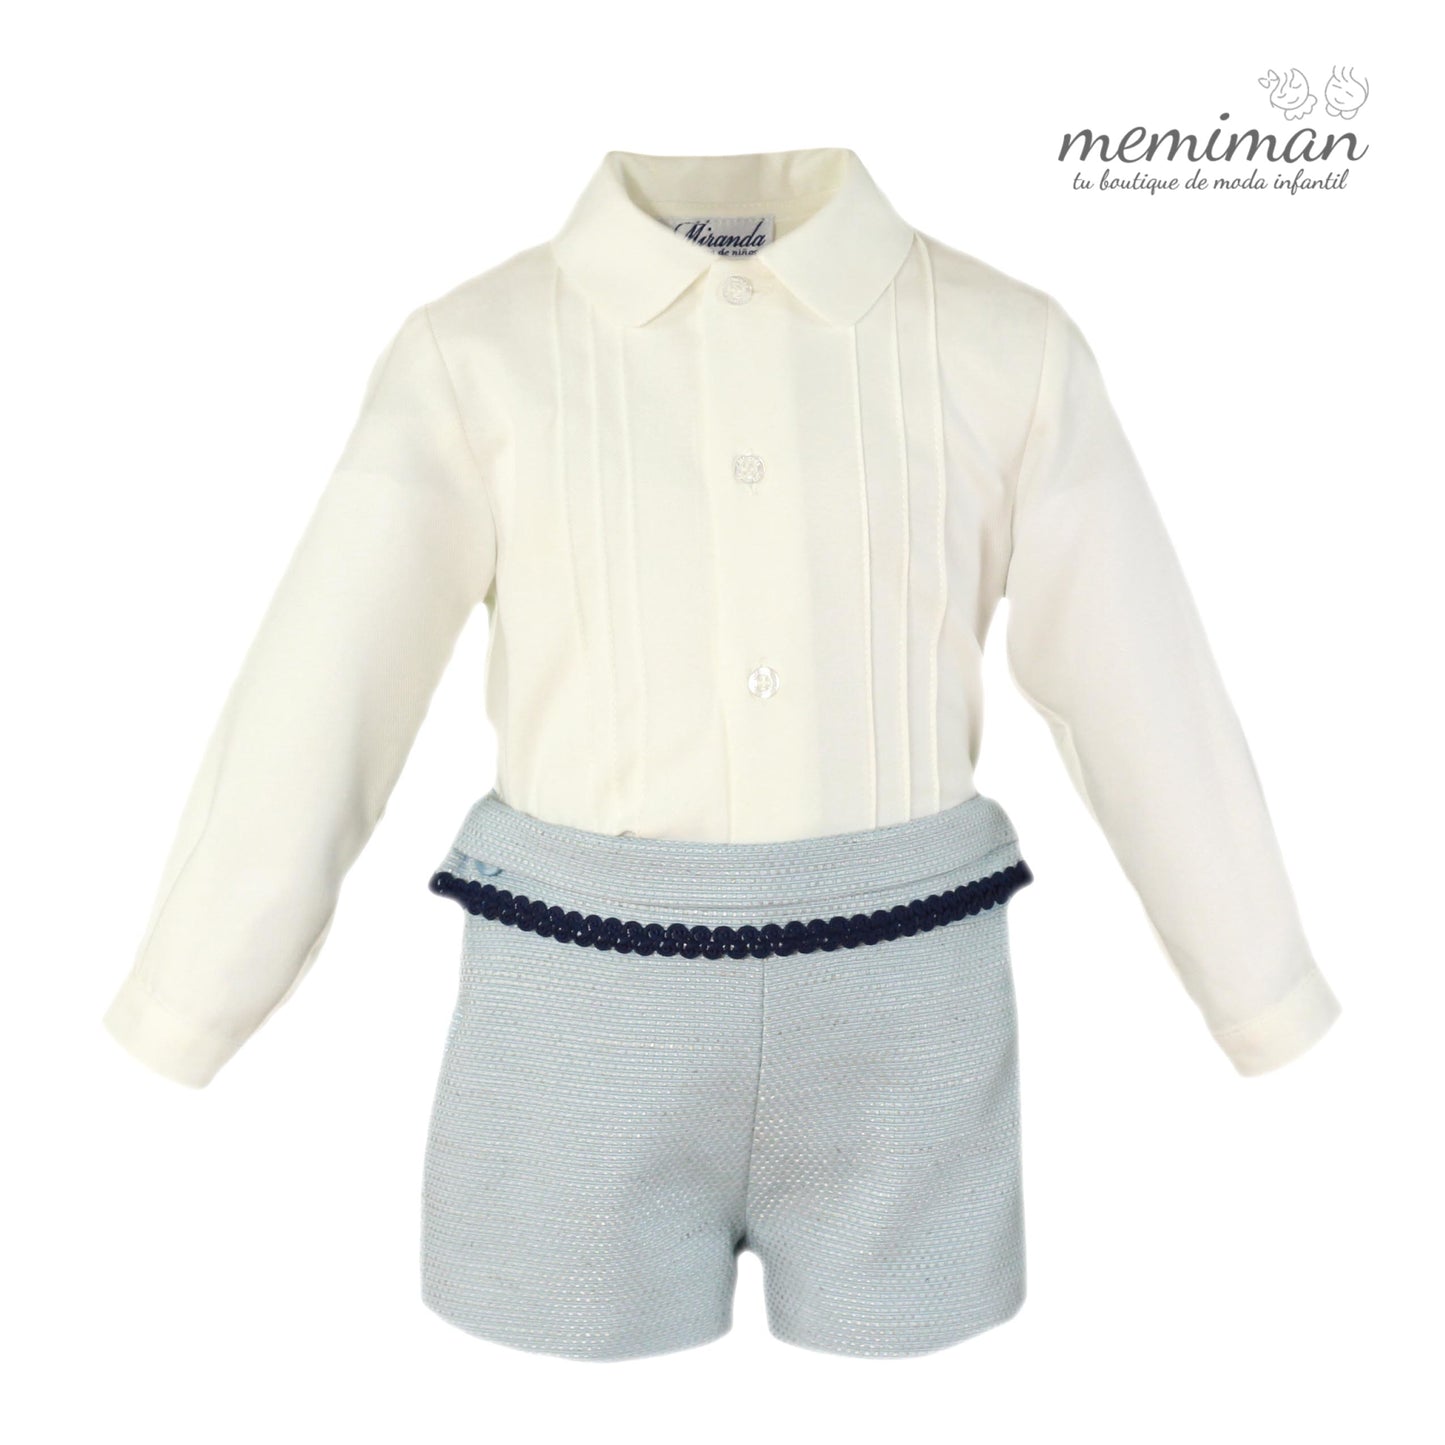 32-0126-23 Conjunto bebé camisa y pantalón corto